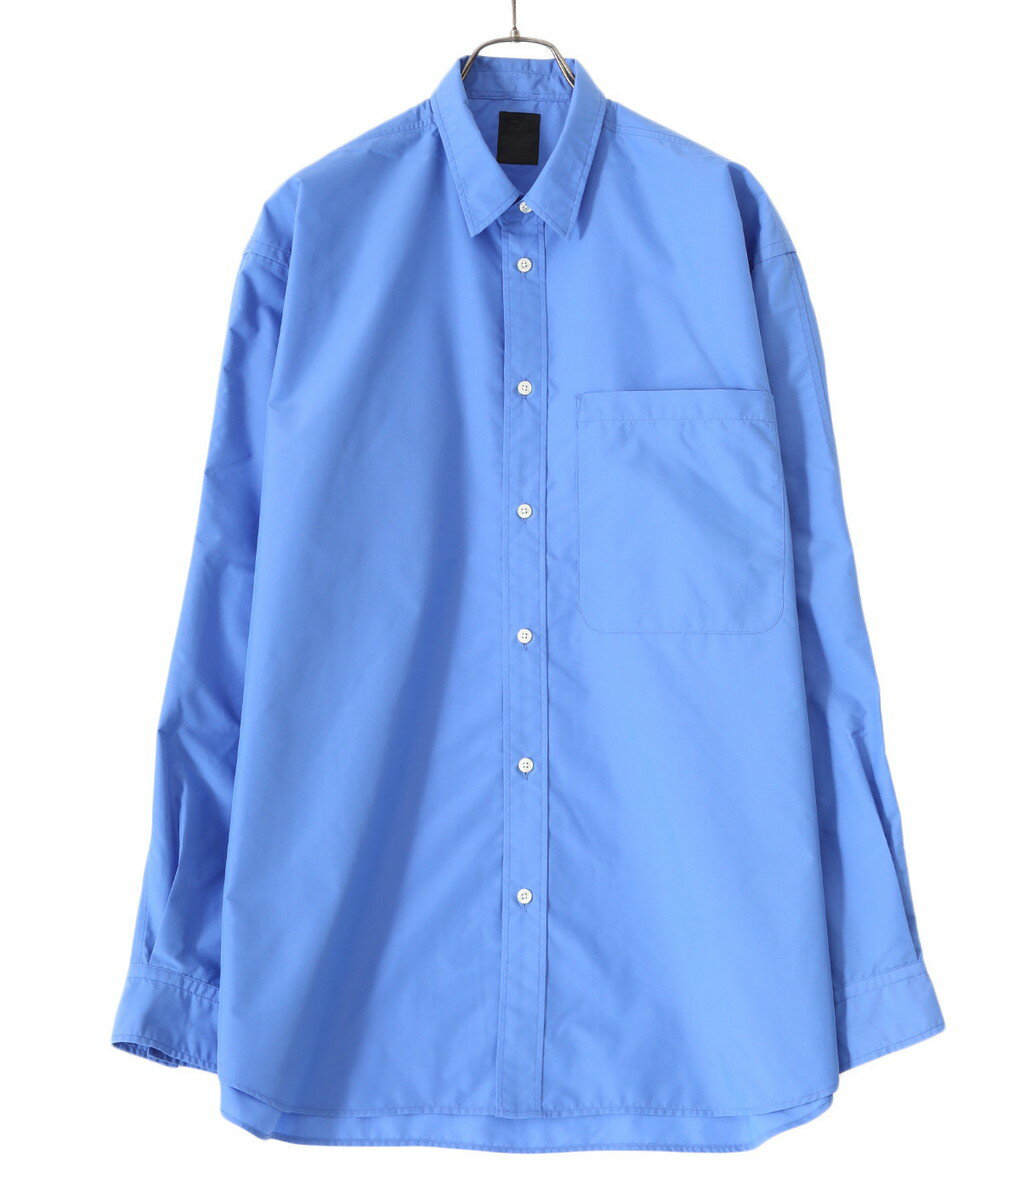 メンズファッション, コート・ジャケット DAIWA PIER39 : TECH REGULAR COLLAR SHIRTS LS 2 : : BE-84022WPIEREA